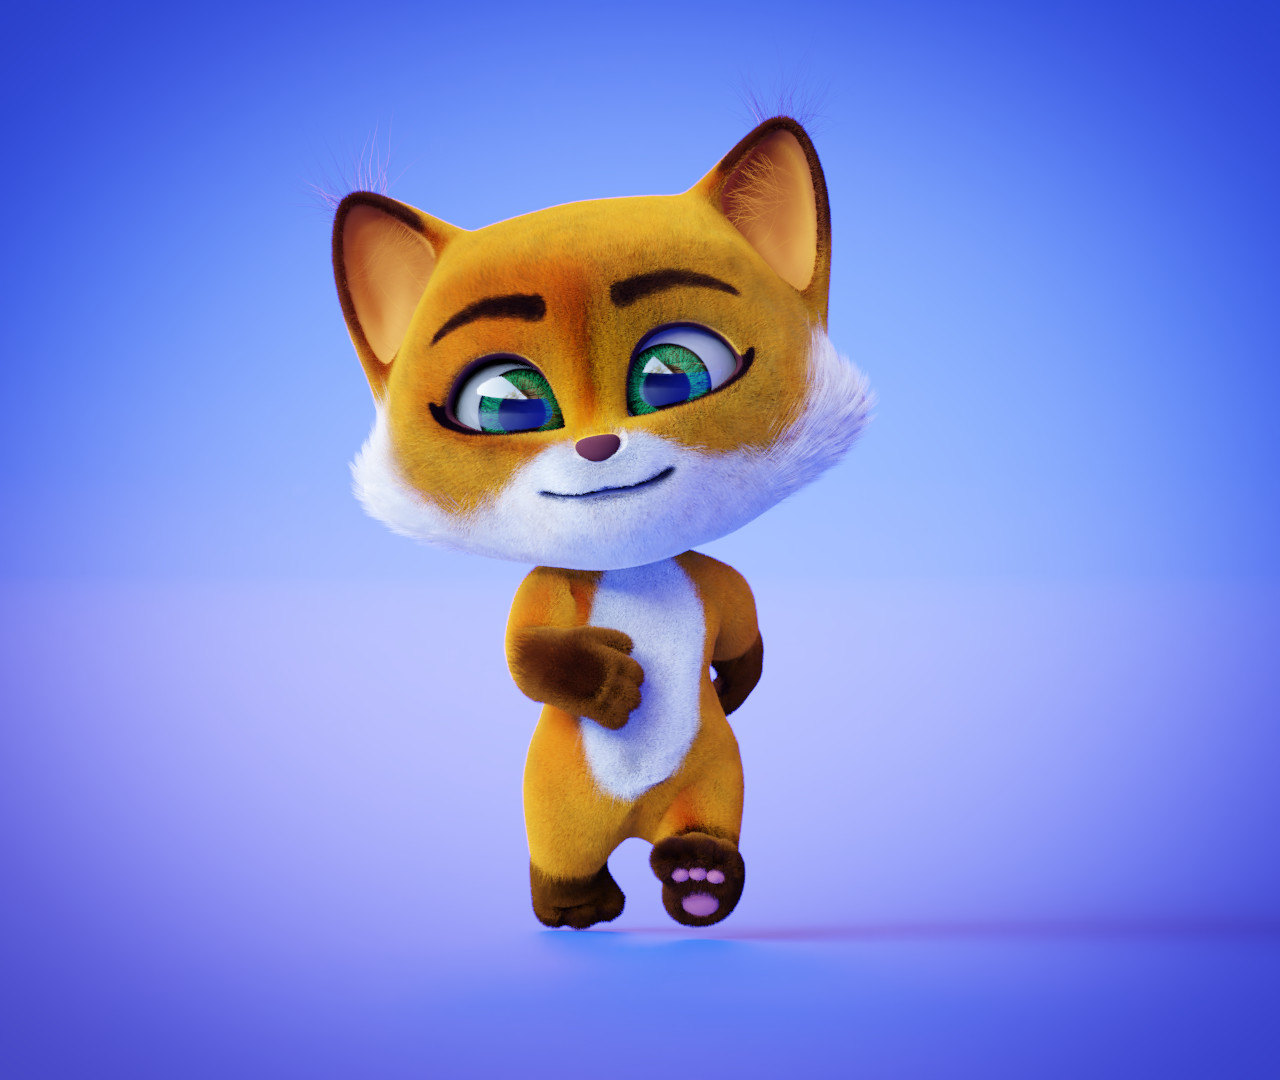 ArtStation - Chester the Fox 3D character model